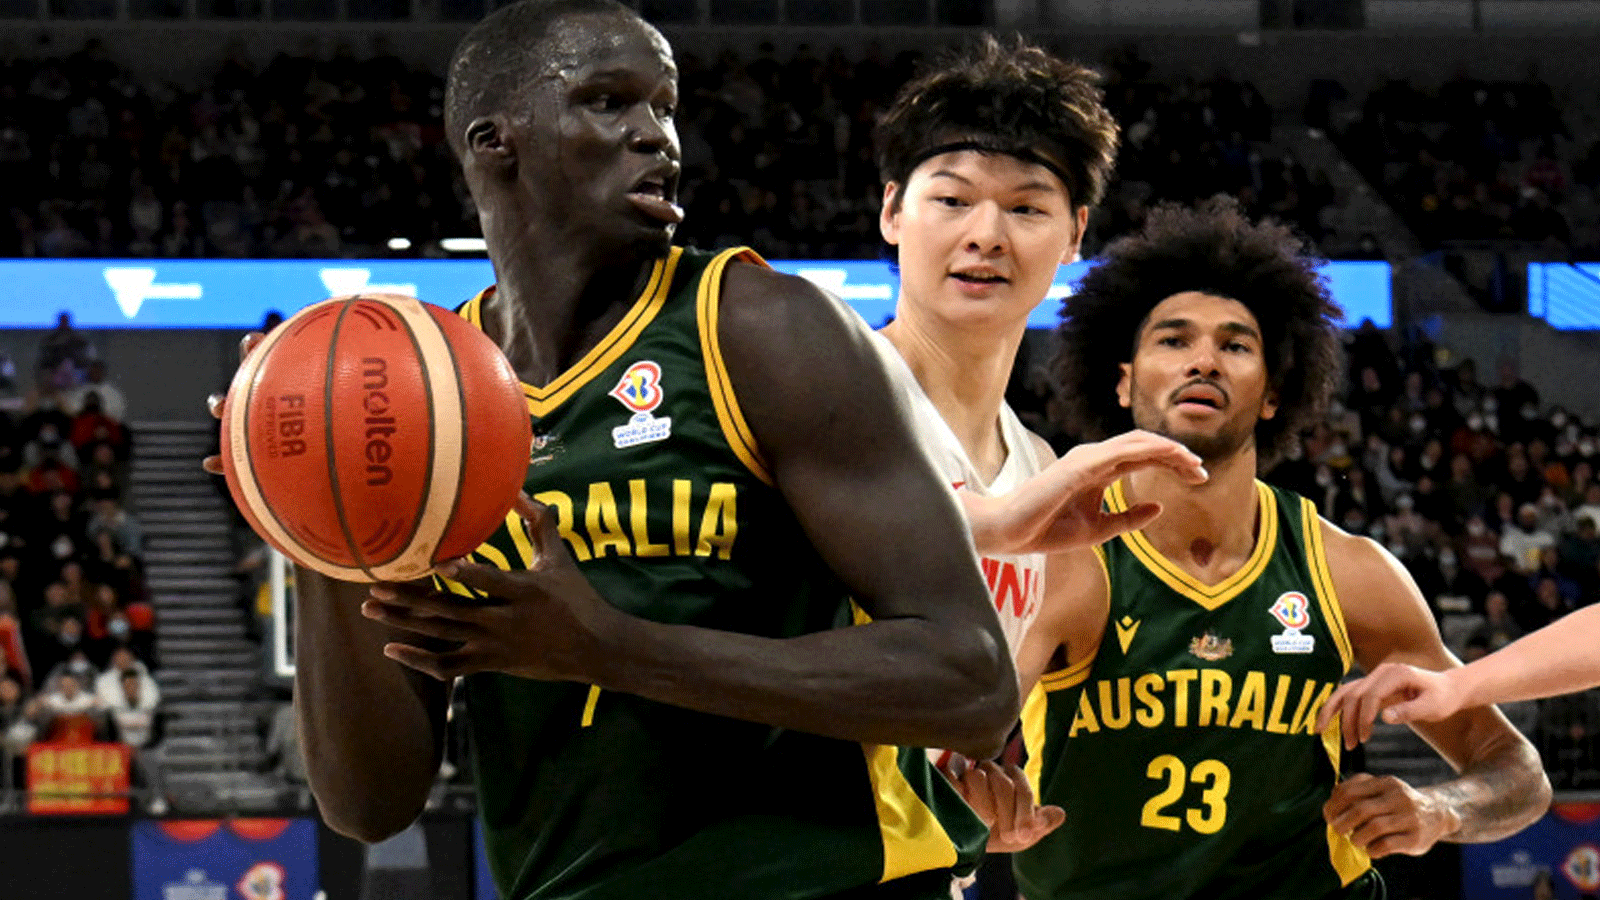  الأسترالي ثون ميكر (على اليسار) يستعد للتسديد خلال مباراة التصفيات المؤهلة لكأس العالم لكرة السلة فيبا 2023 بين أستراليا والصين في ملبورن يوم 3 تموز\يوليو2022